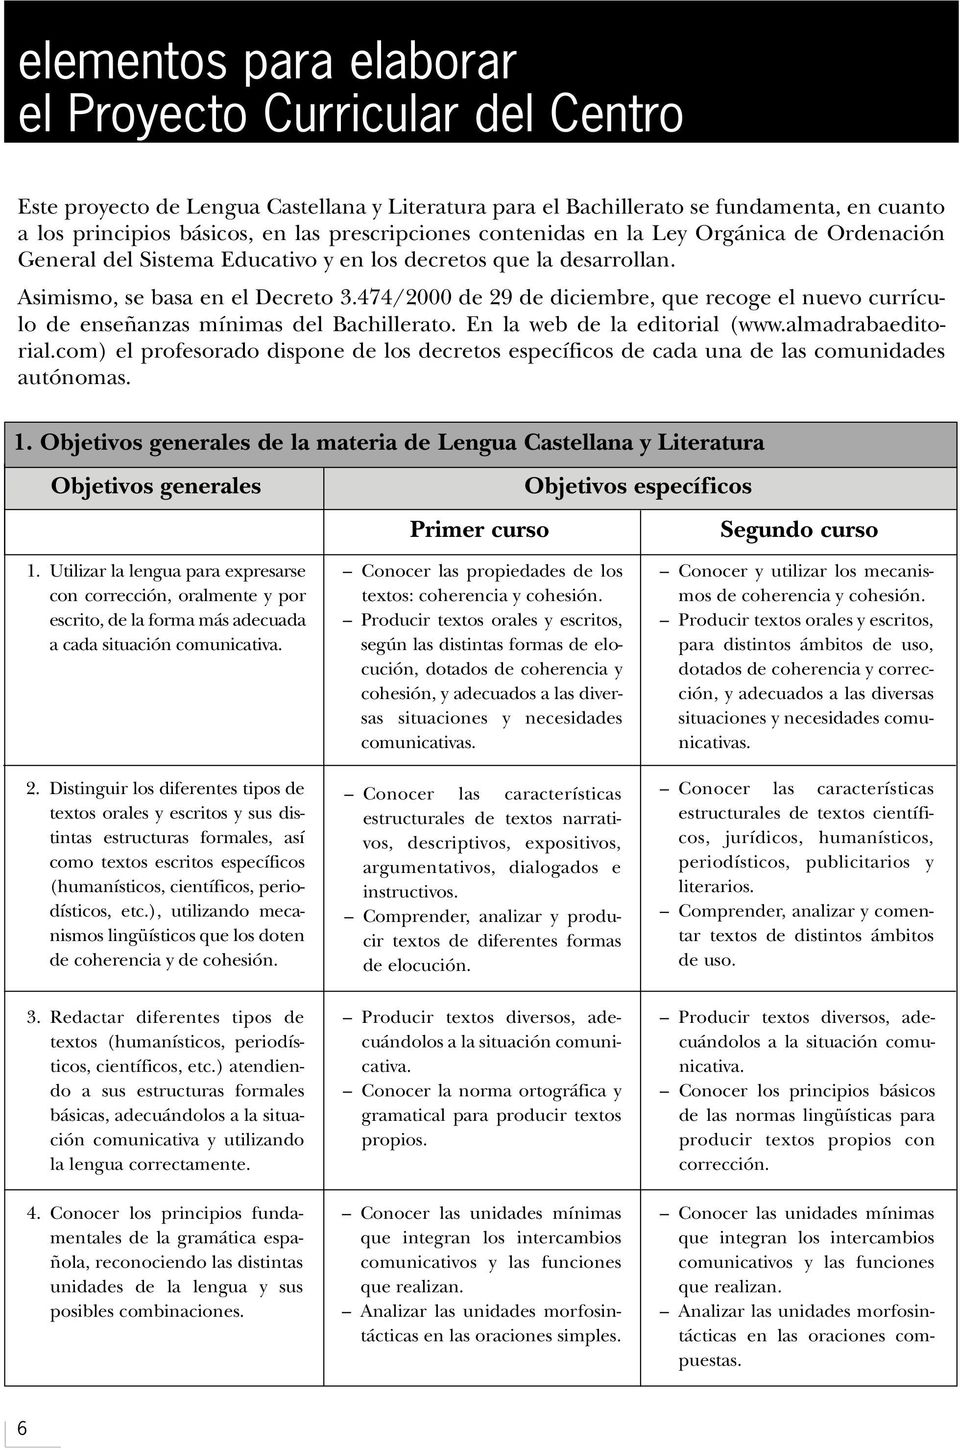 474/2000 de 29 de diciembre, que recoge el nuevo currículo de enseñanzas mínimas del Bachillerato. En la web de la editorial (www.almadrabaeditorial.